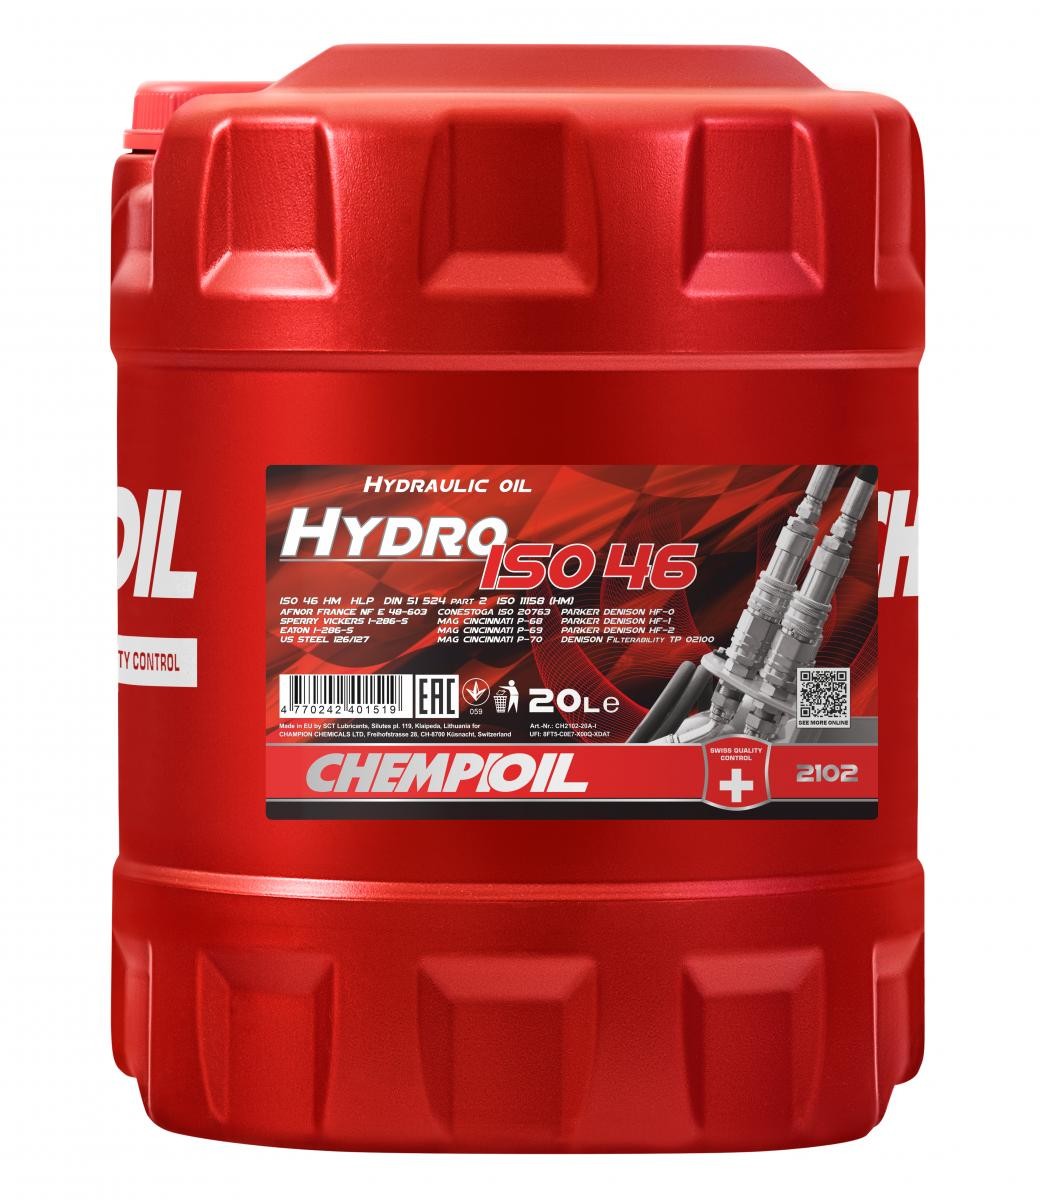 CHEMPIOIL Hydro, ISO 46 CH2102-20 Hydraulic Oil Capacity: 20l